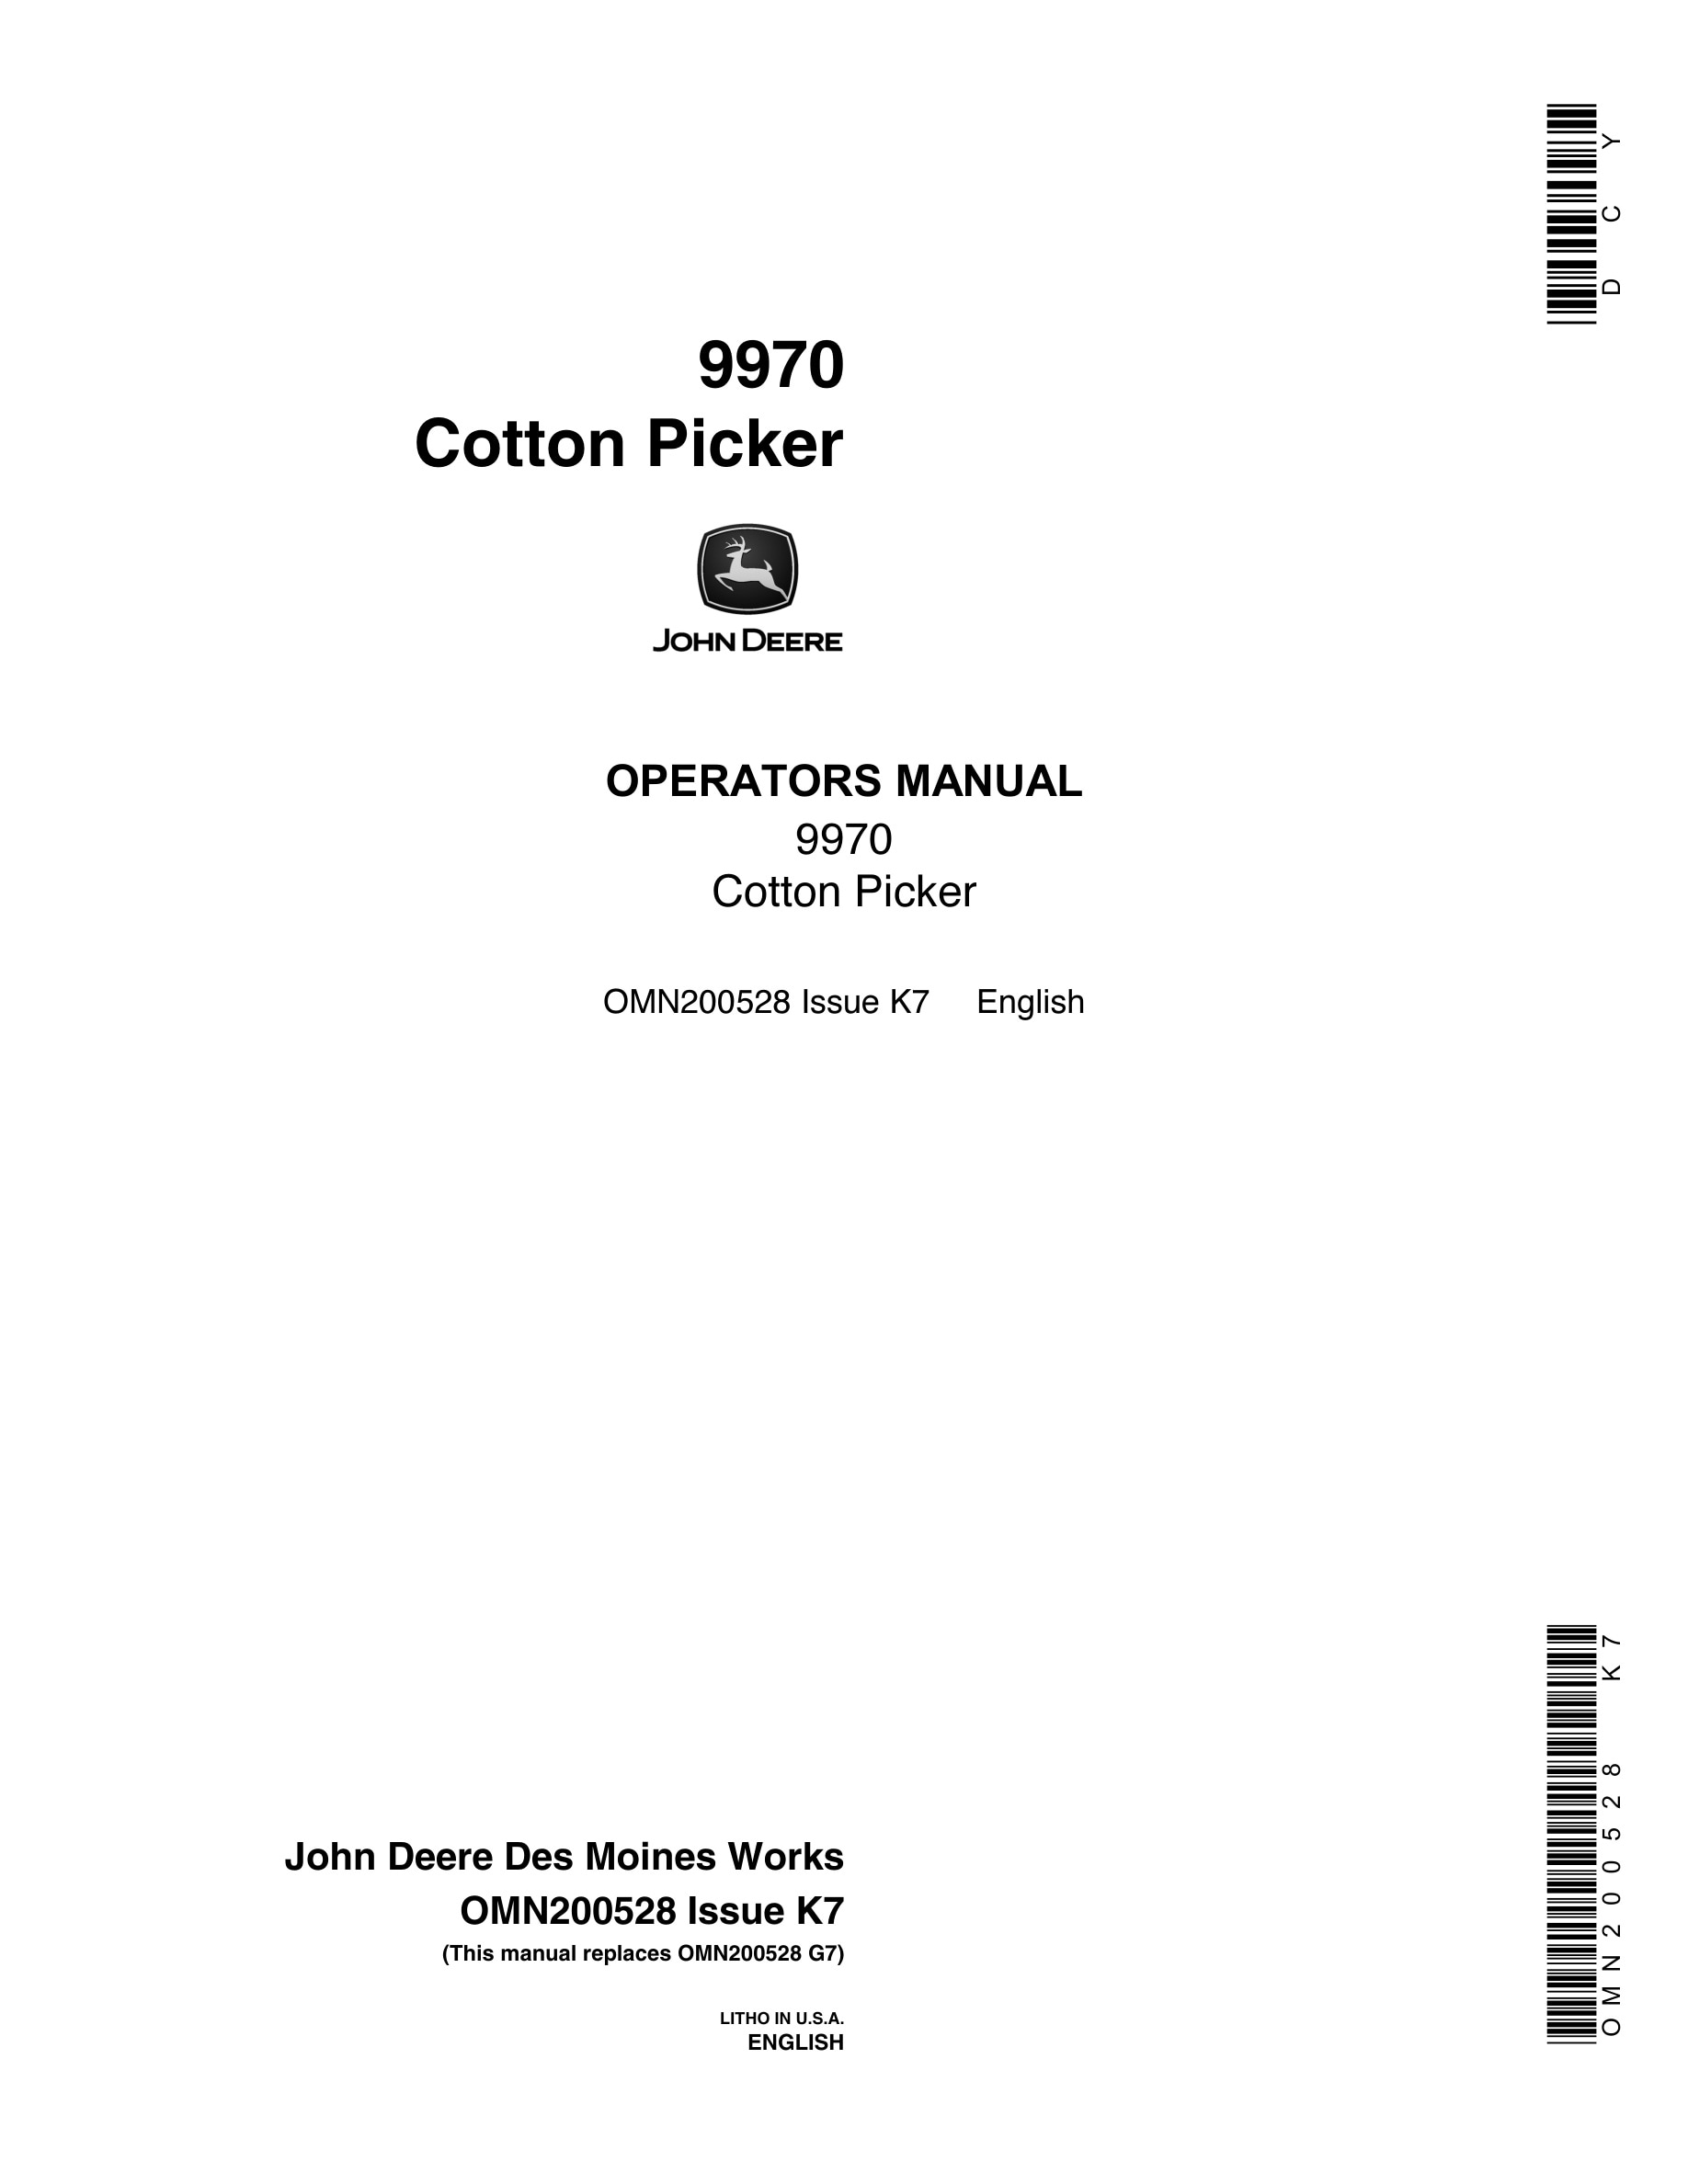 John Deere 9970 Cotton Picker Operator Manual OMN200528-1